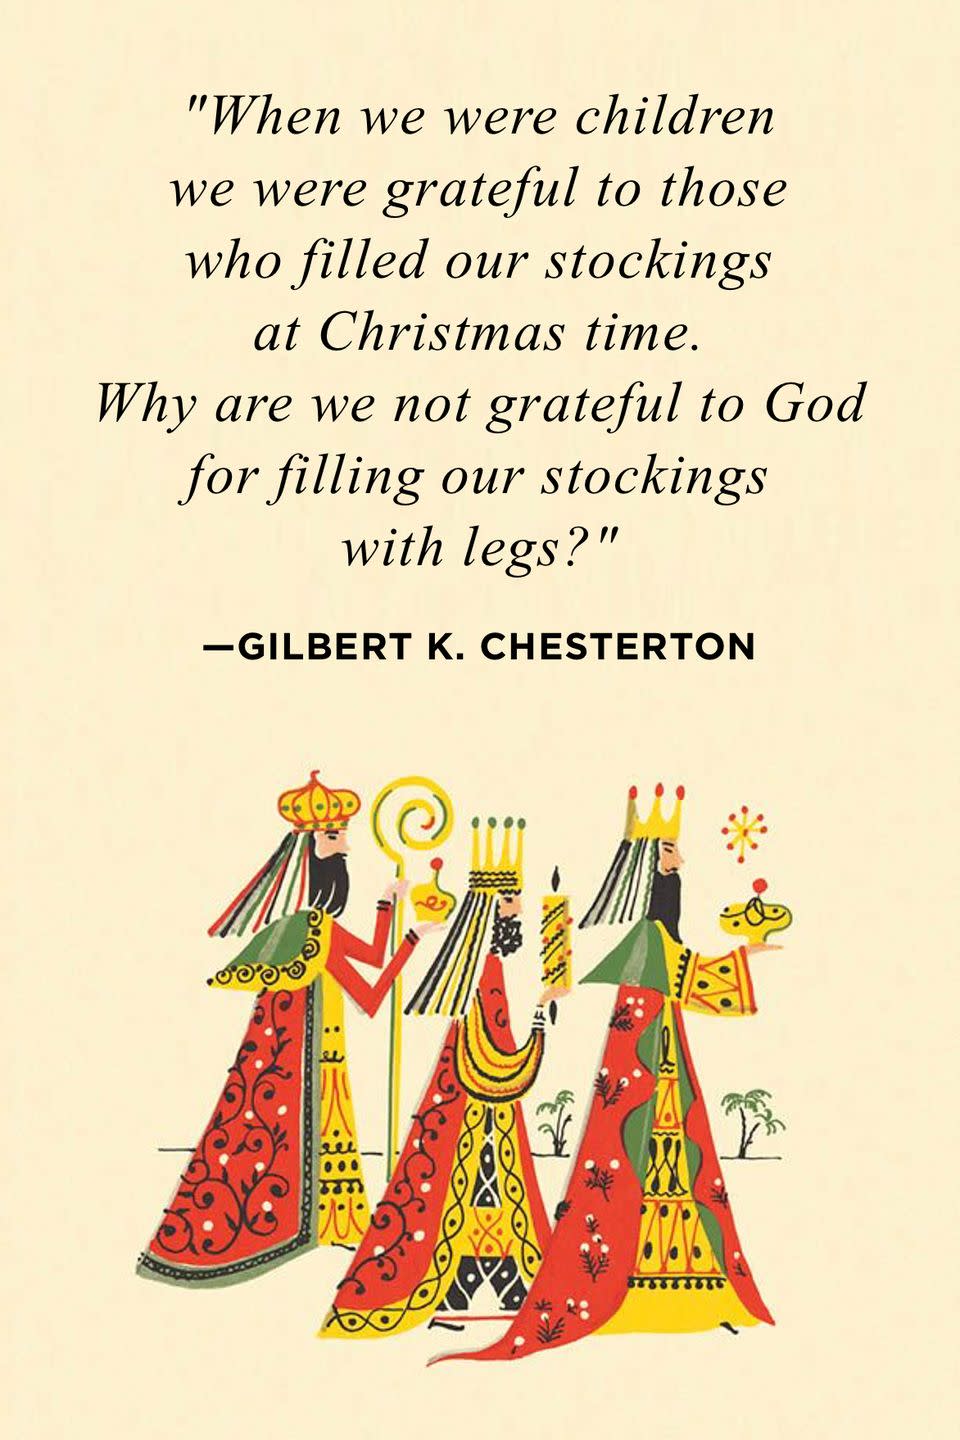 11) Gilbert K. Chesterton